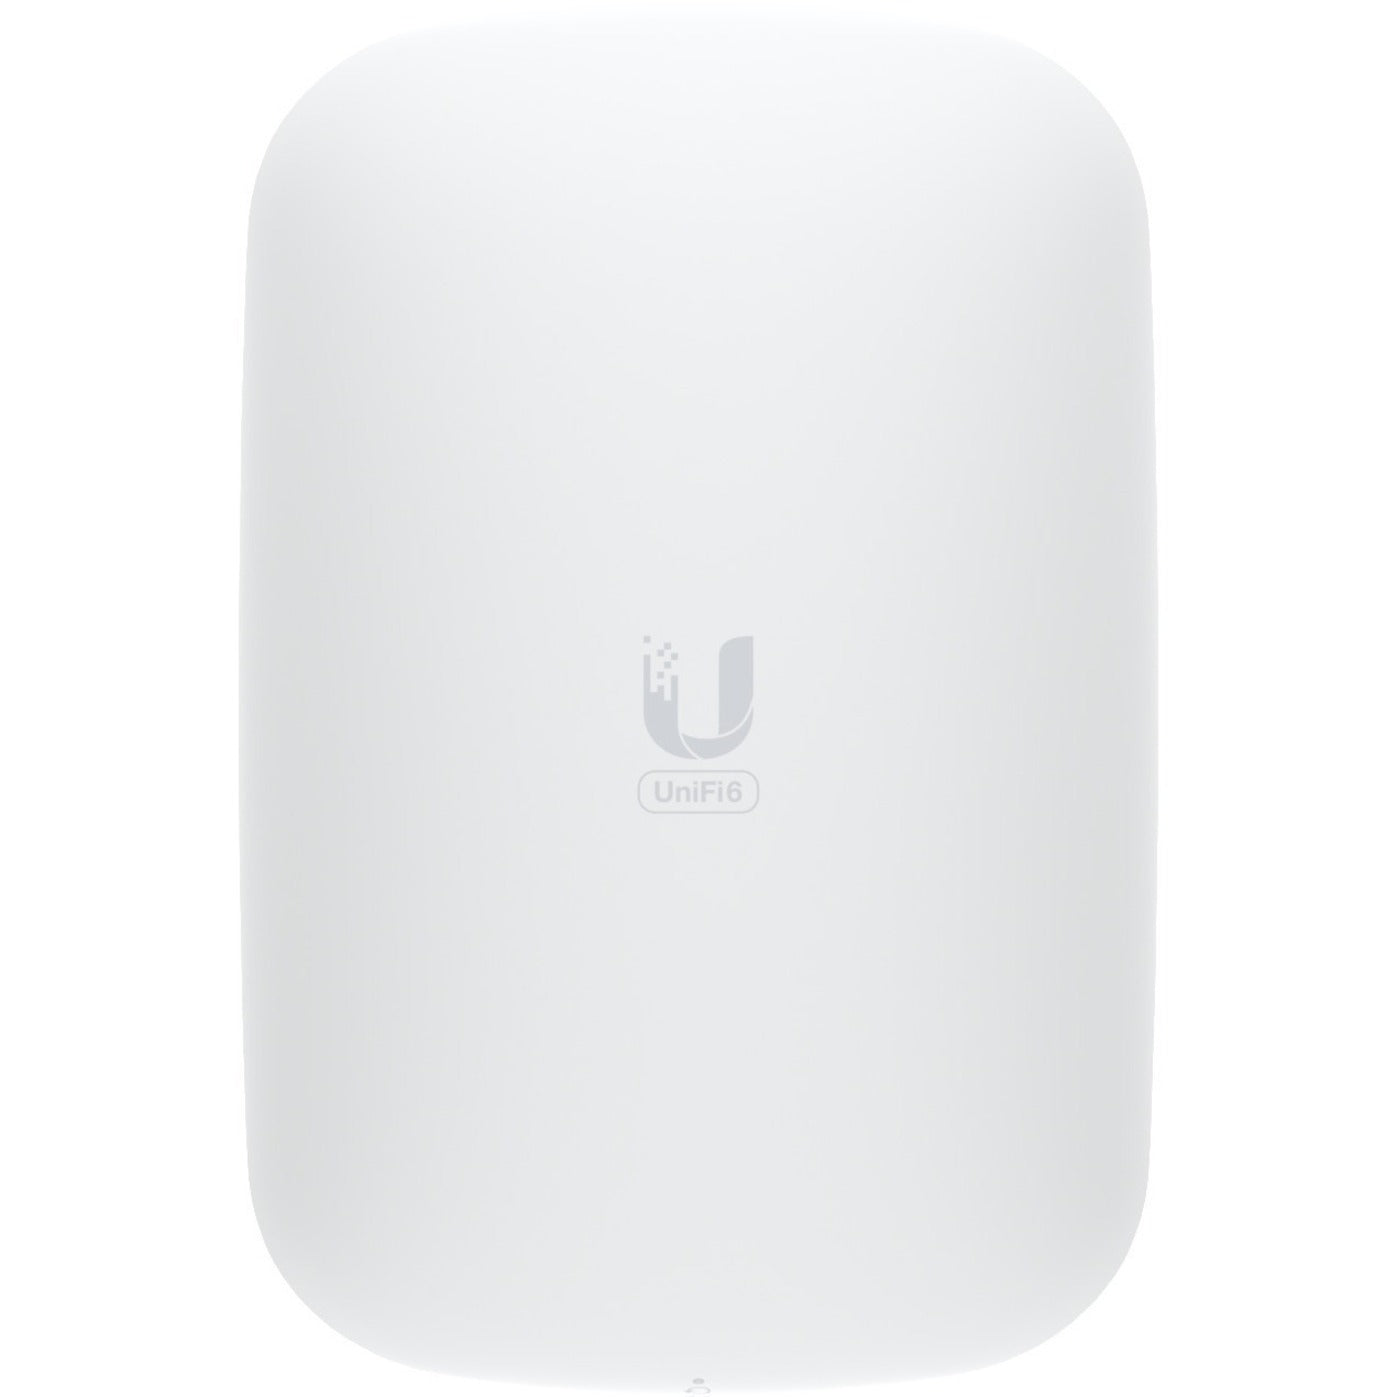 Ubiquiti U6-EXTENDER-US UniFi6 Extender Dual Band Wireless Access Point, 5.30 Gbit/s